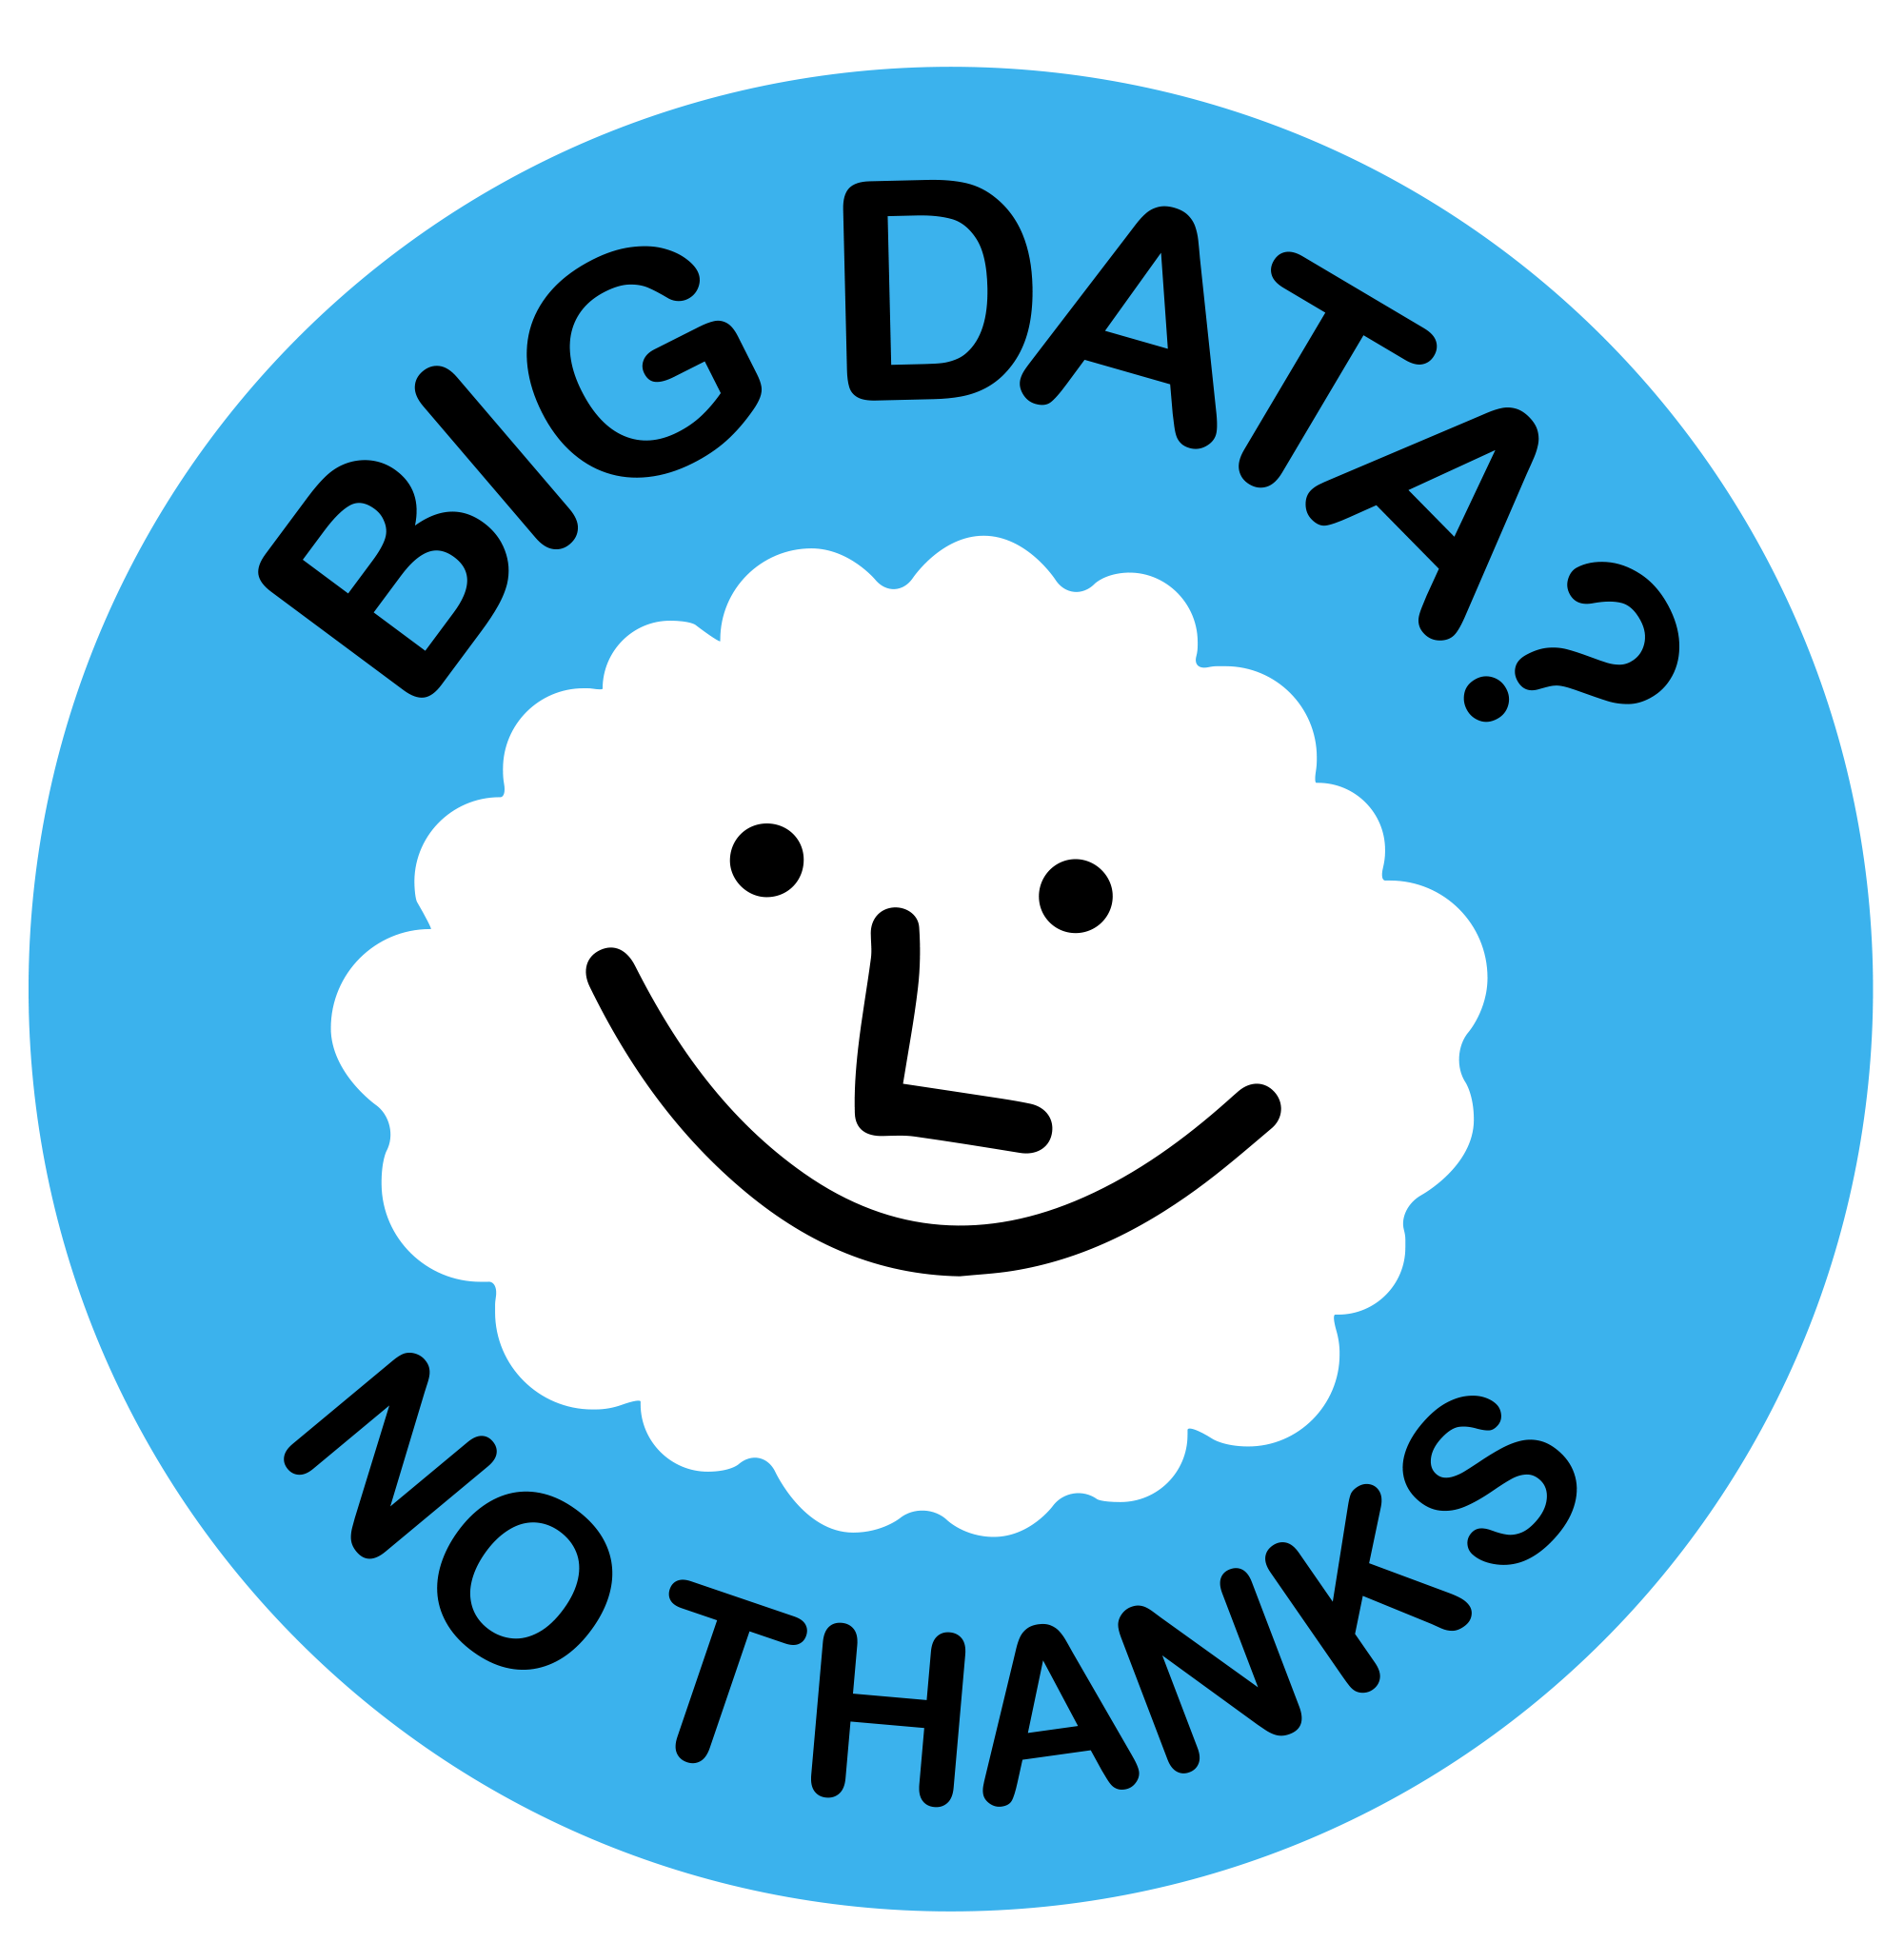 Big-Data-No-Thanks-Cloud.png